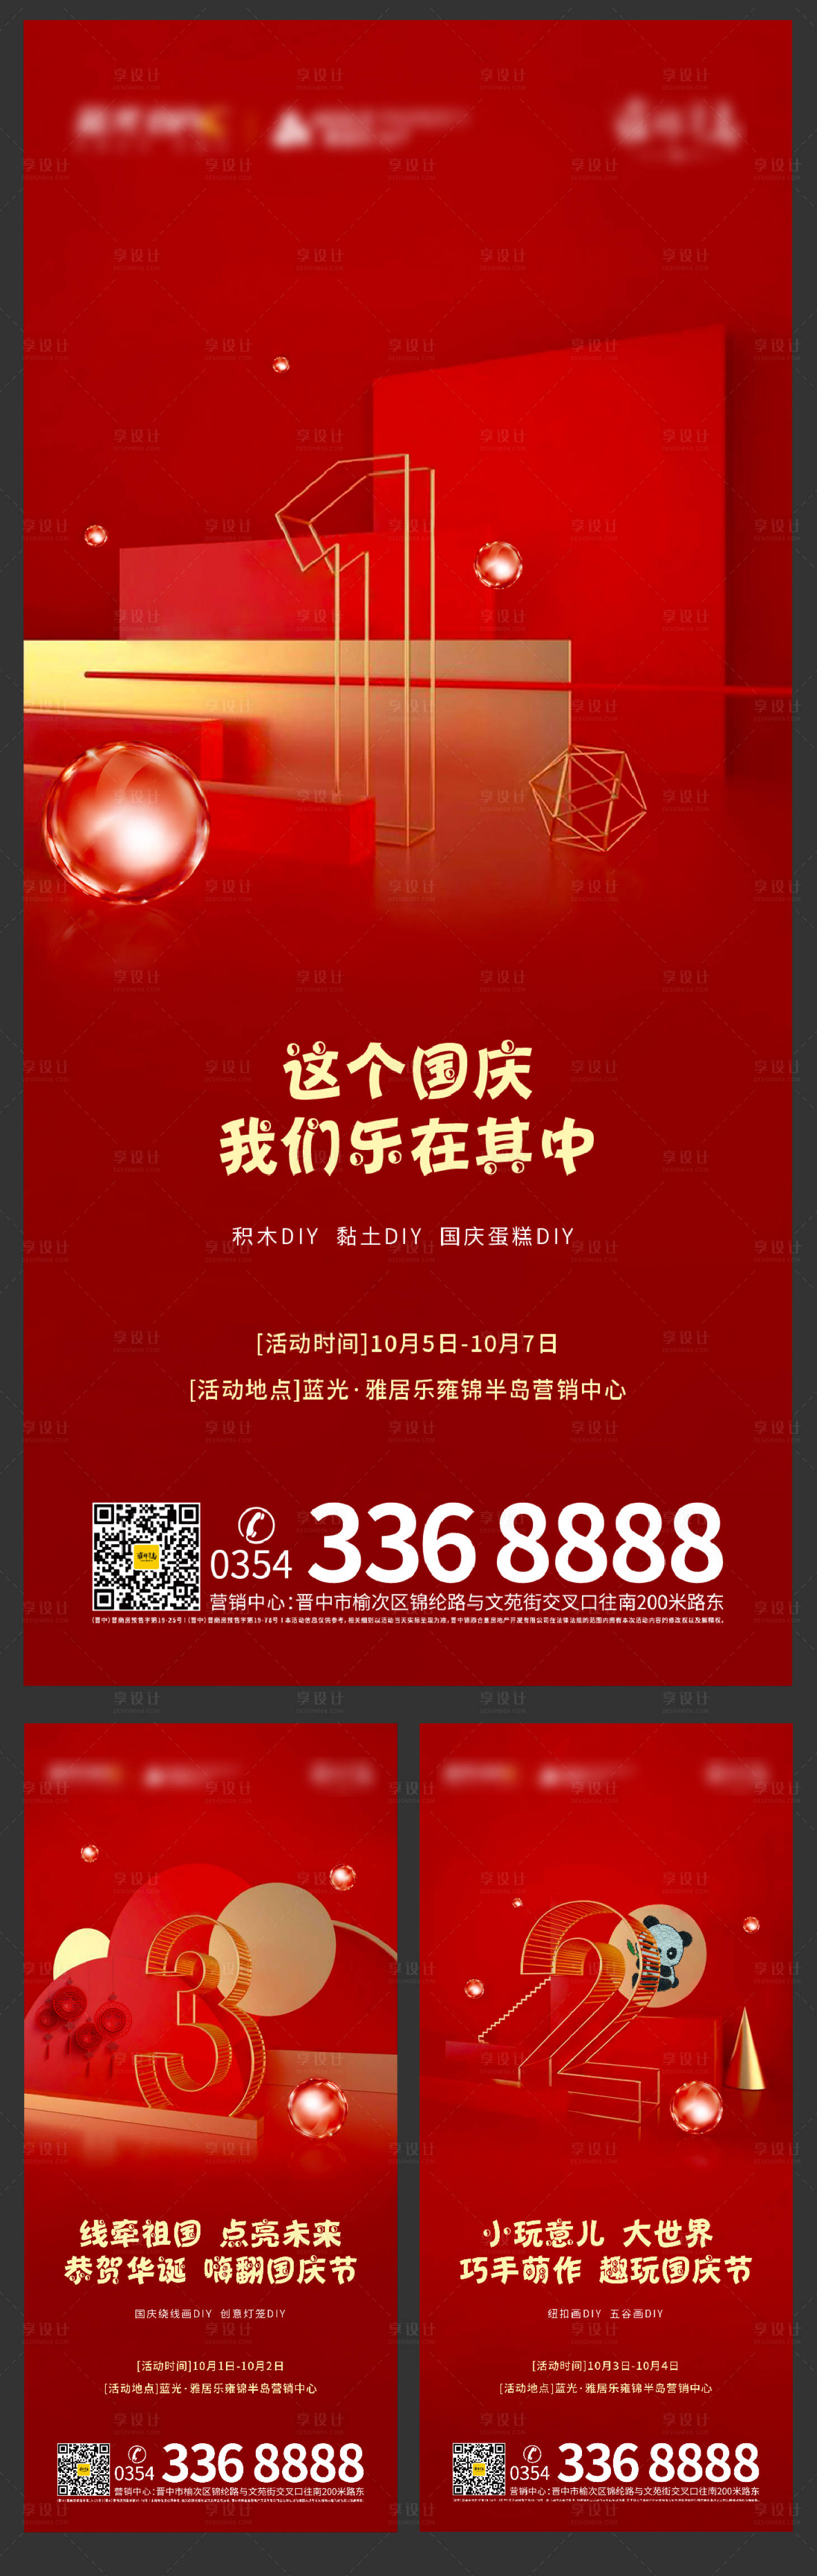 地产国庆嘉年华活动倒计时系列海报PSD广告设计素材海报模板免费下载-享设计